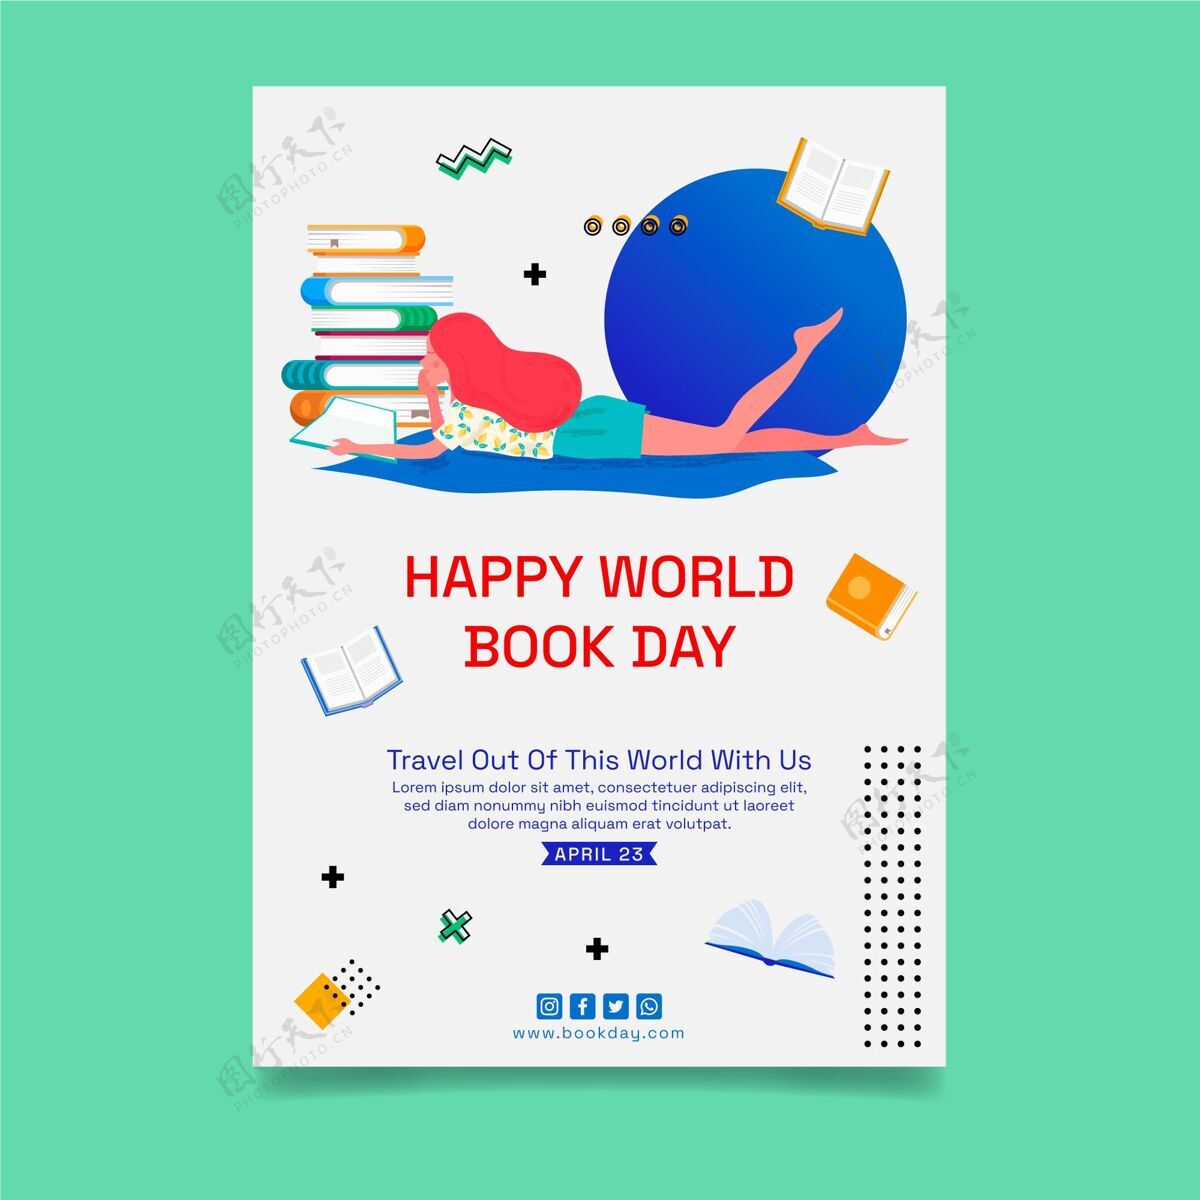 国际世界图书日庆祝活动垂直海报模板全球庆典垂直